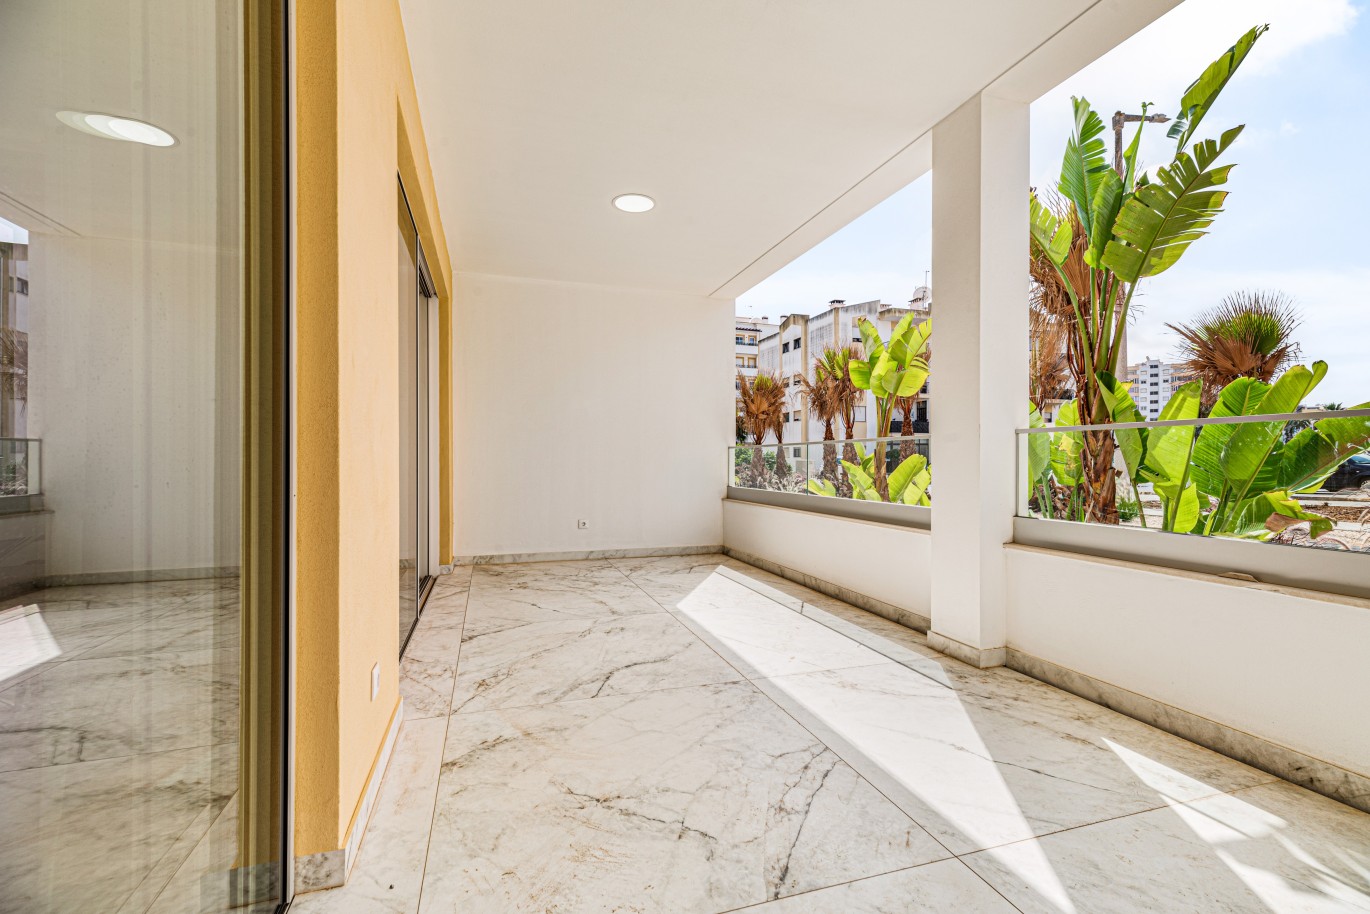 Apartamento, com terraço, para venda, em Lagos, Algarve_238259